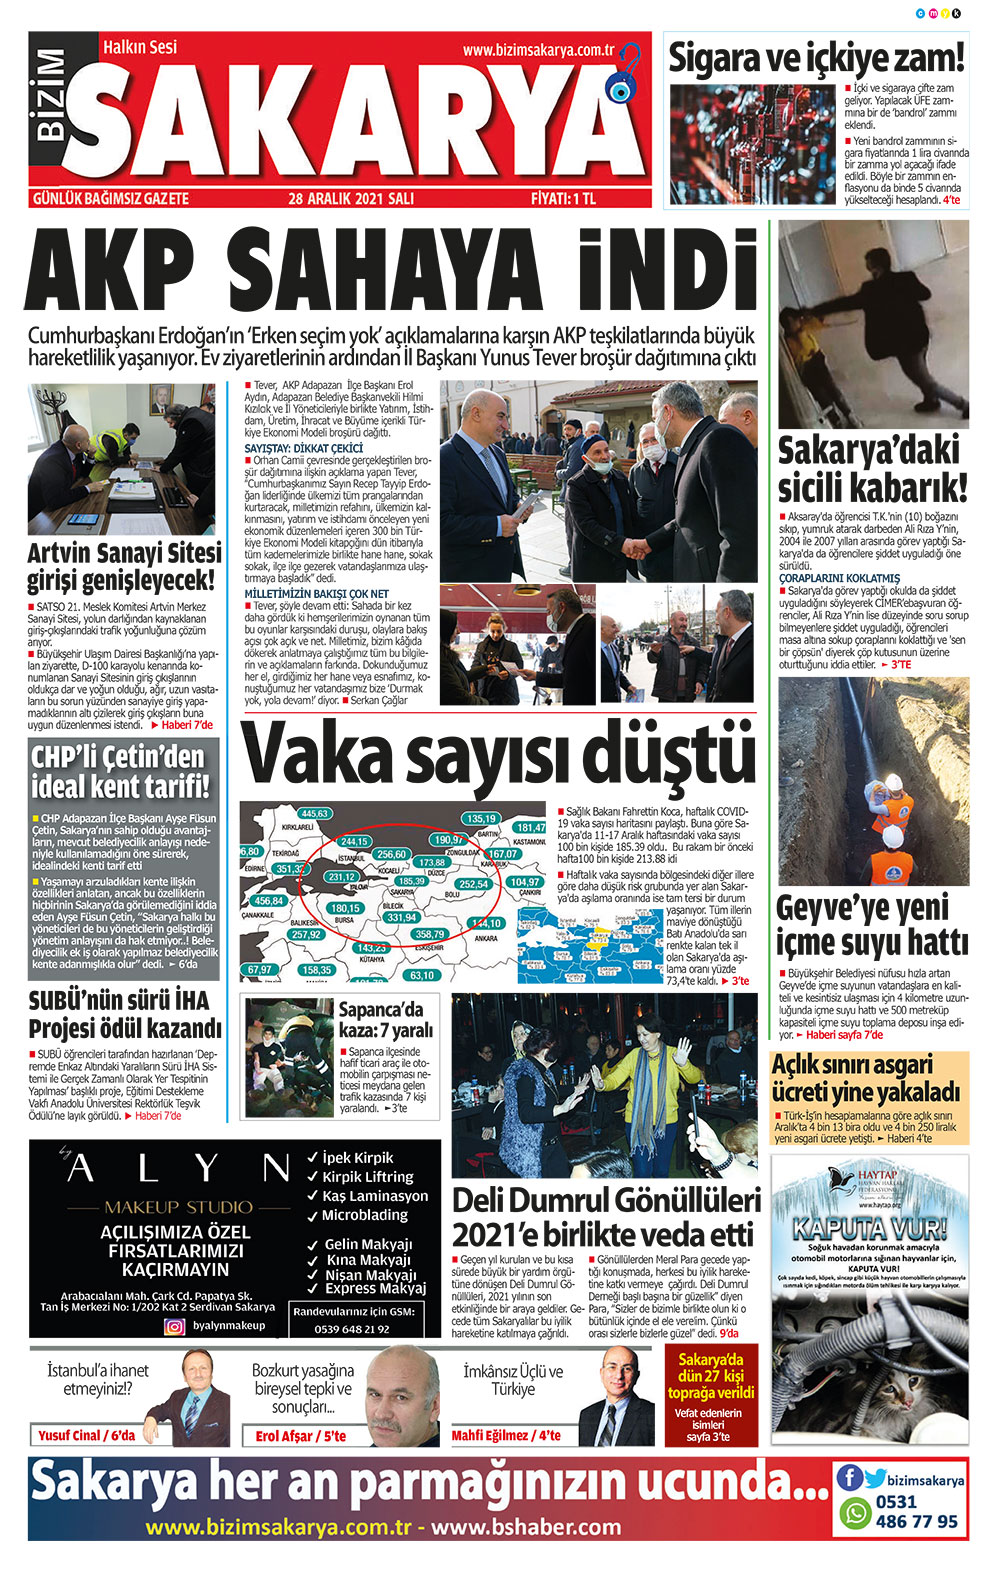 Bizim Sakarya Gazetesi - 28.12.2021 Manşeti